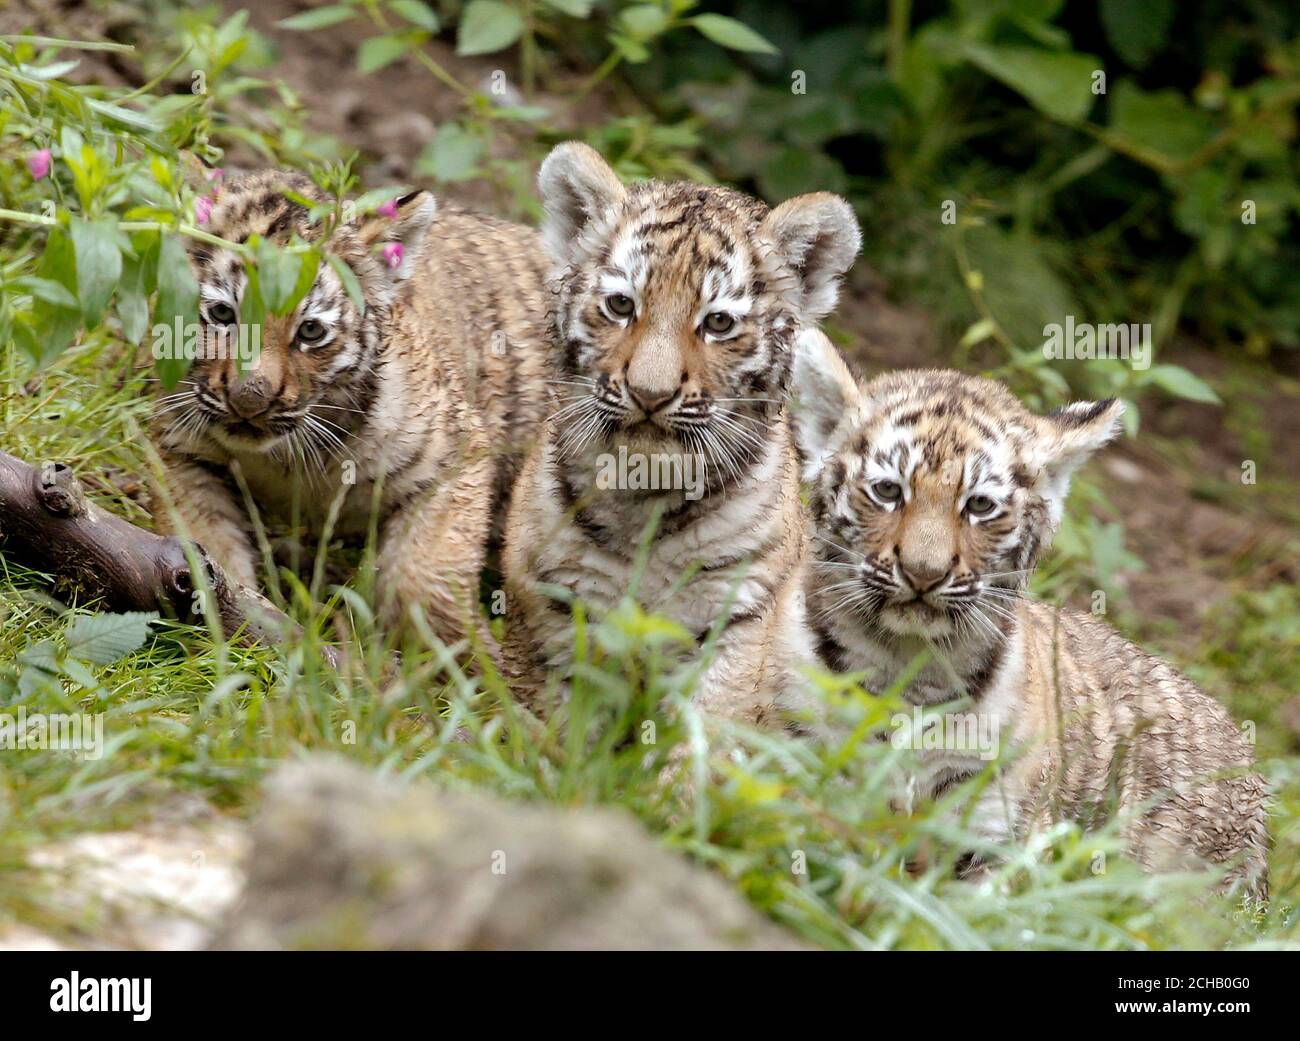 Tiger In Zoo Zurich Switzerland Stockfotos und -bilder Kaufen - Alamy